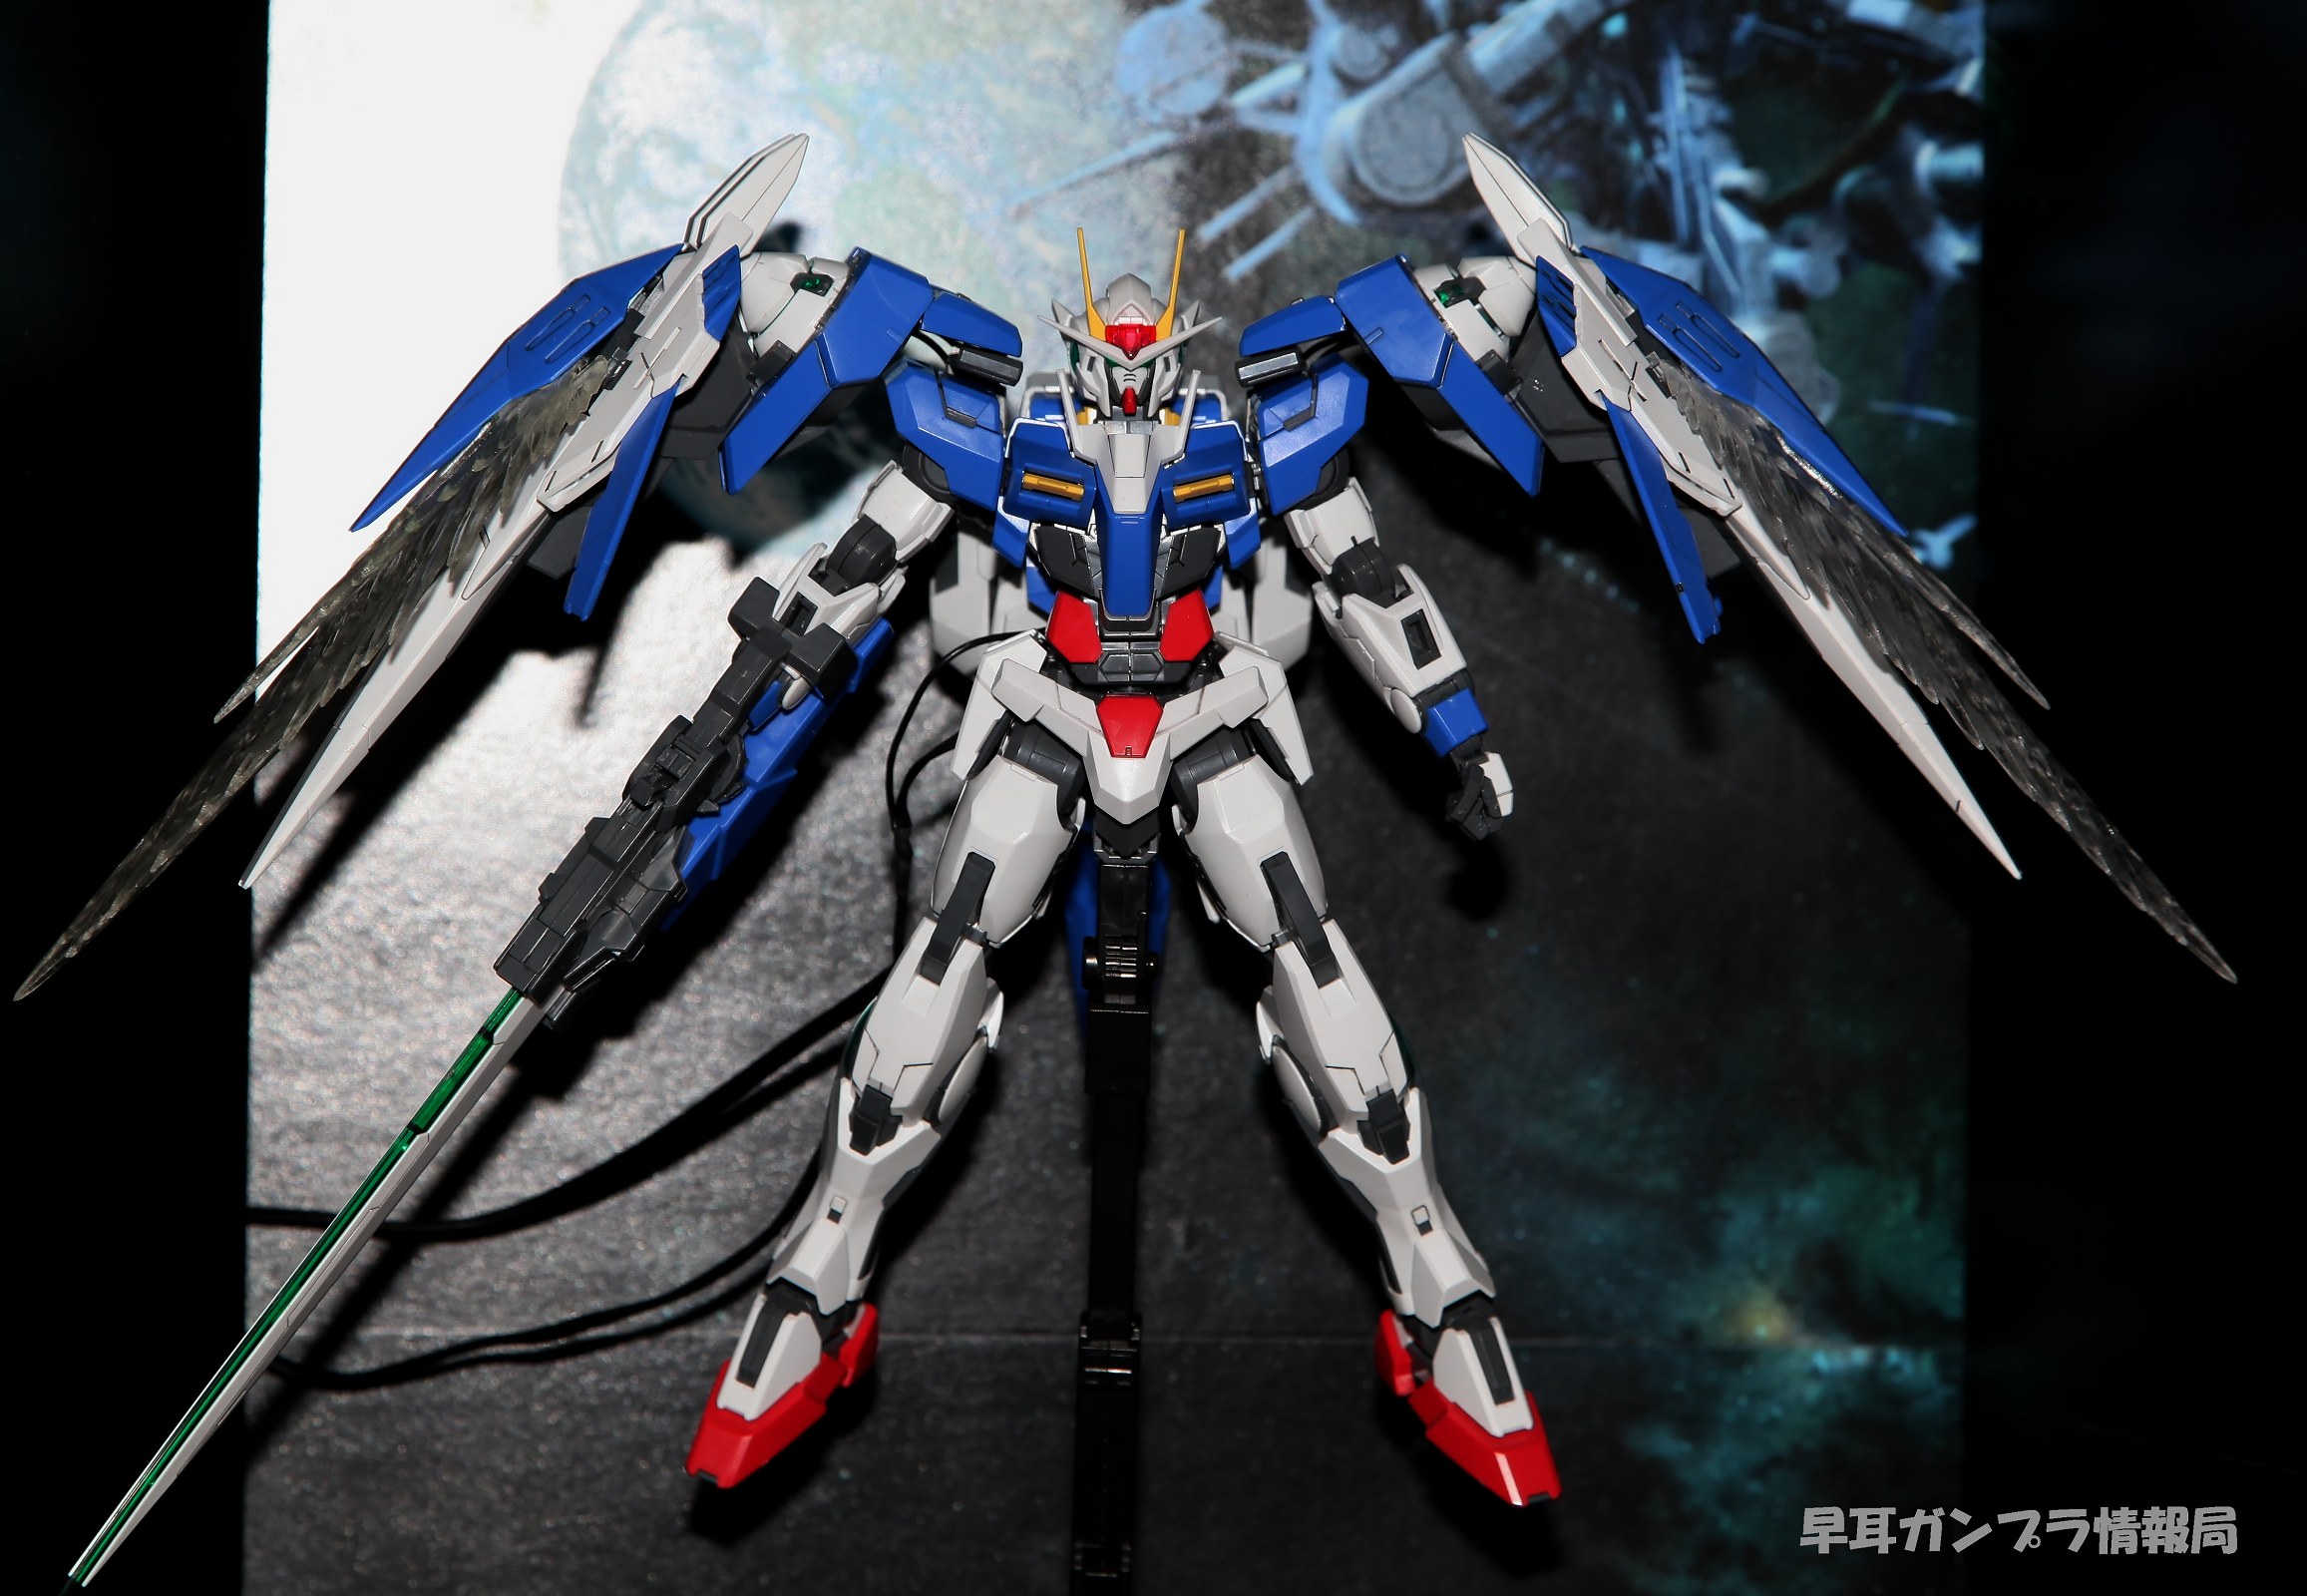 Gn Gnr Gundam Raiser No New Wallpaper Size Image